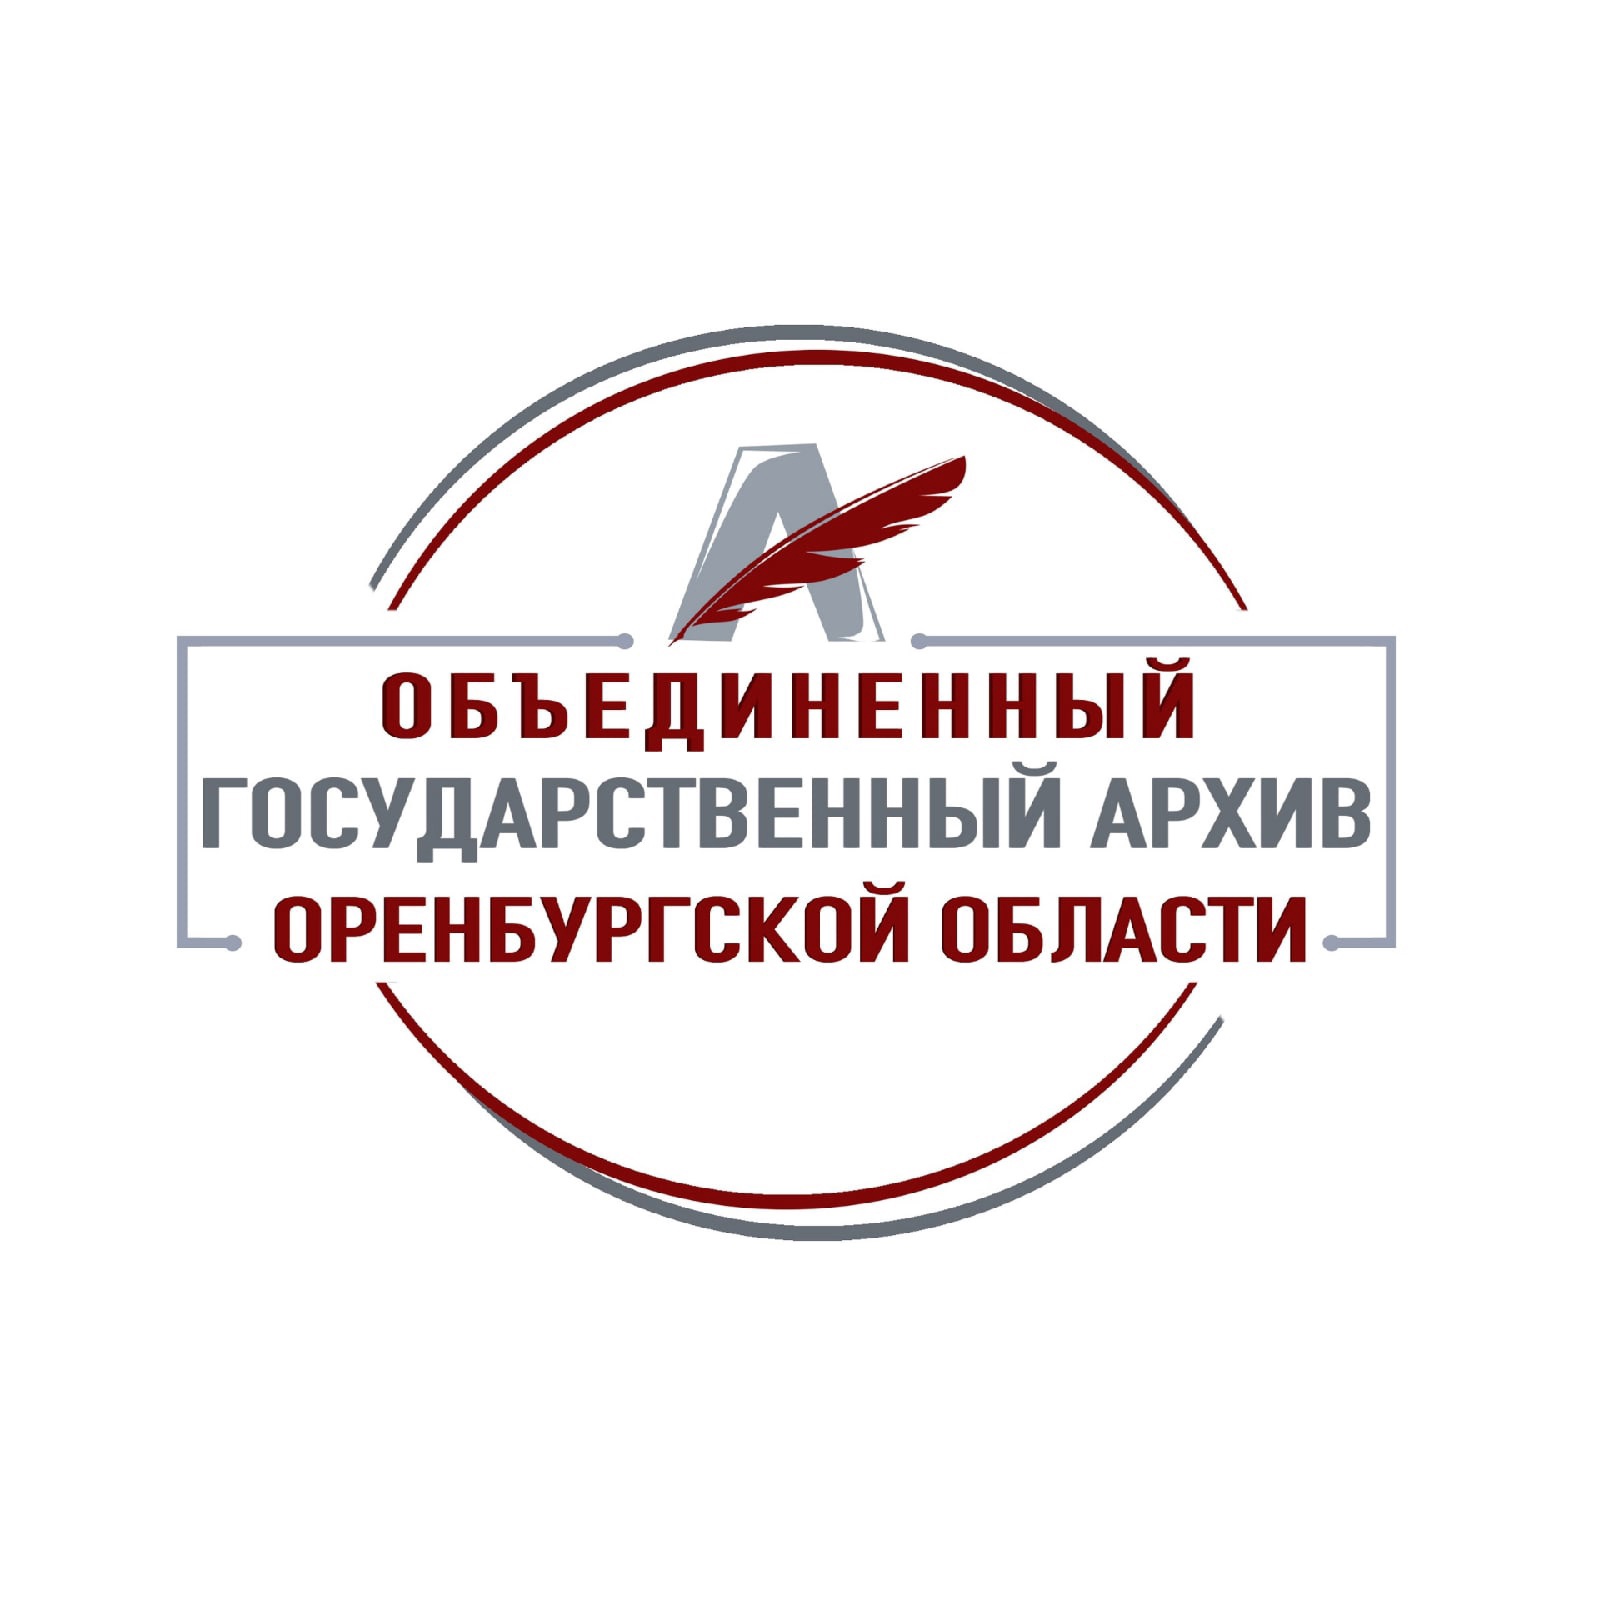 Объединенный государственный архив Оренбургской области